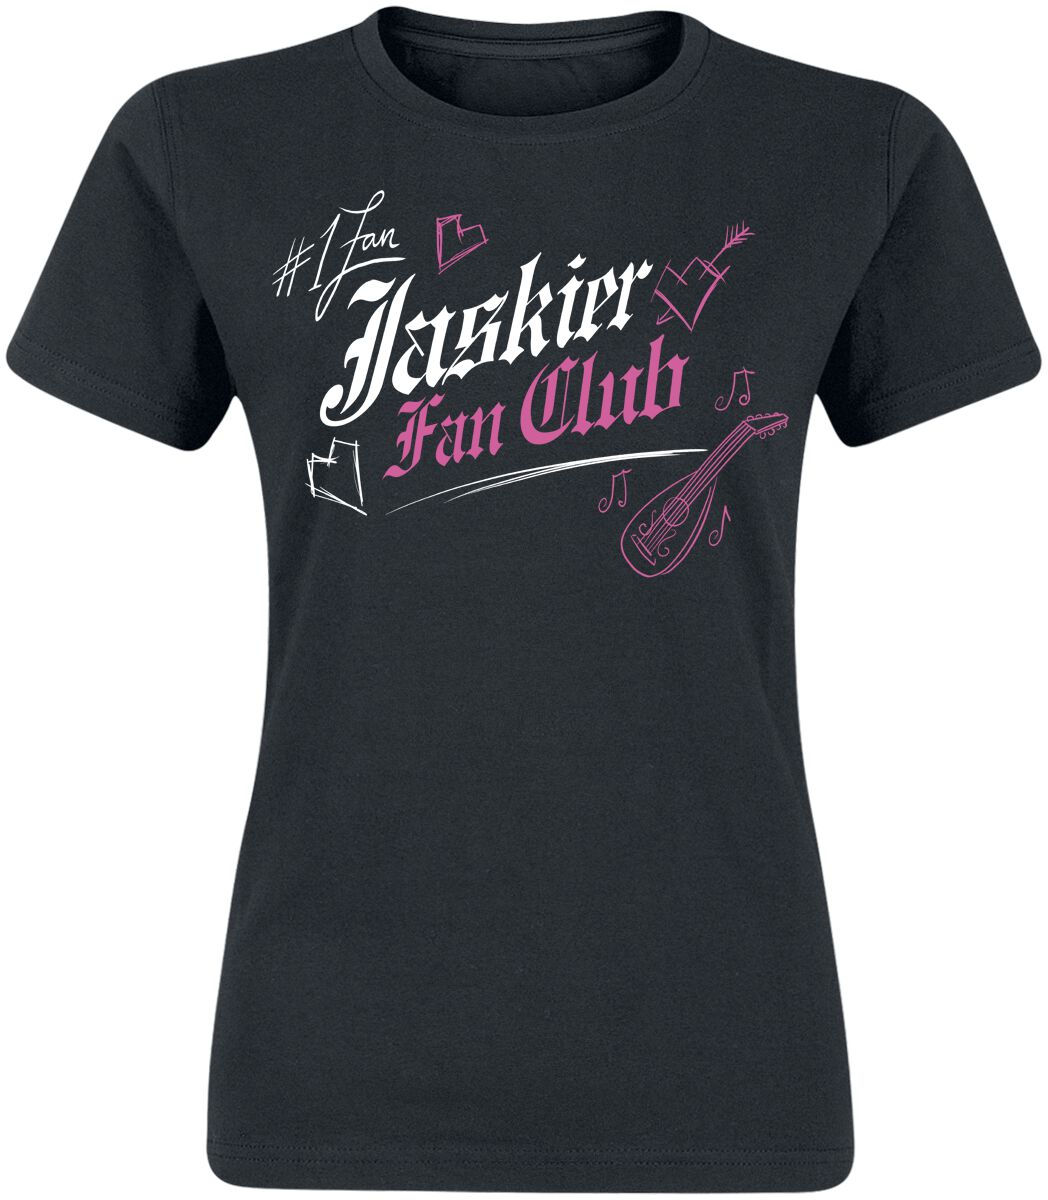 The Witcher - Jaskier Fan Club - T-Shirt - schwarz